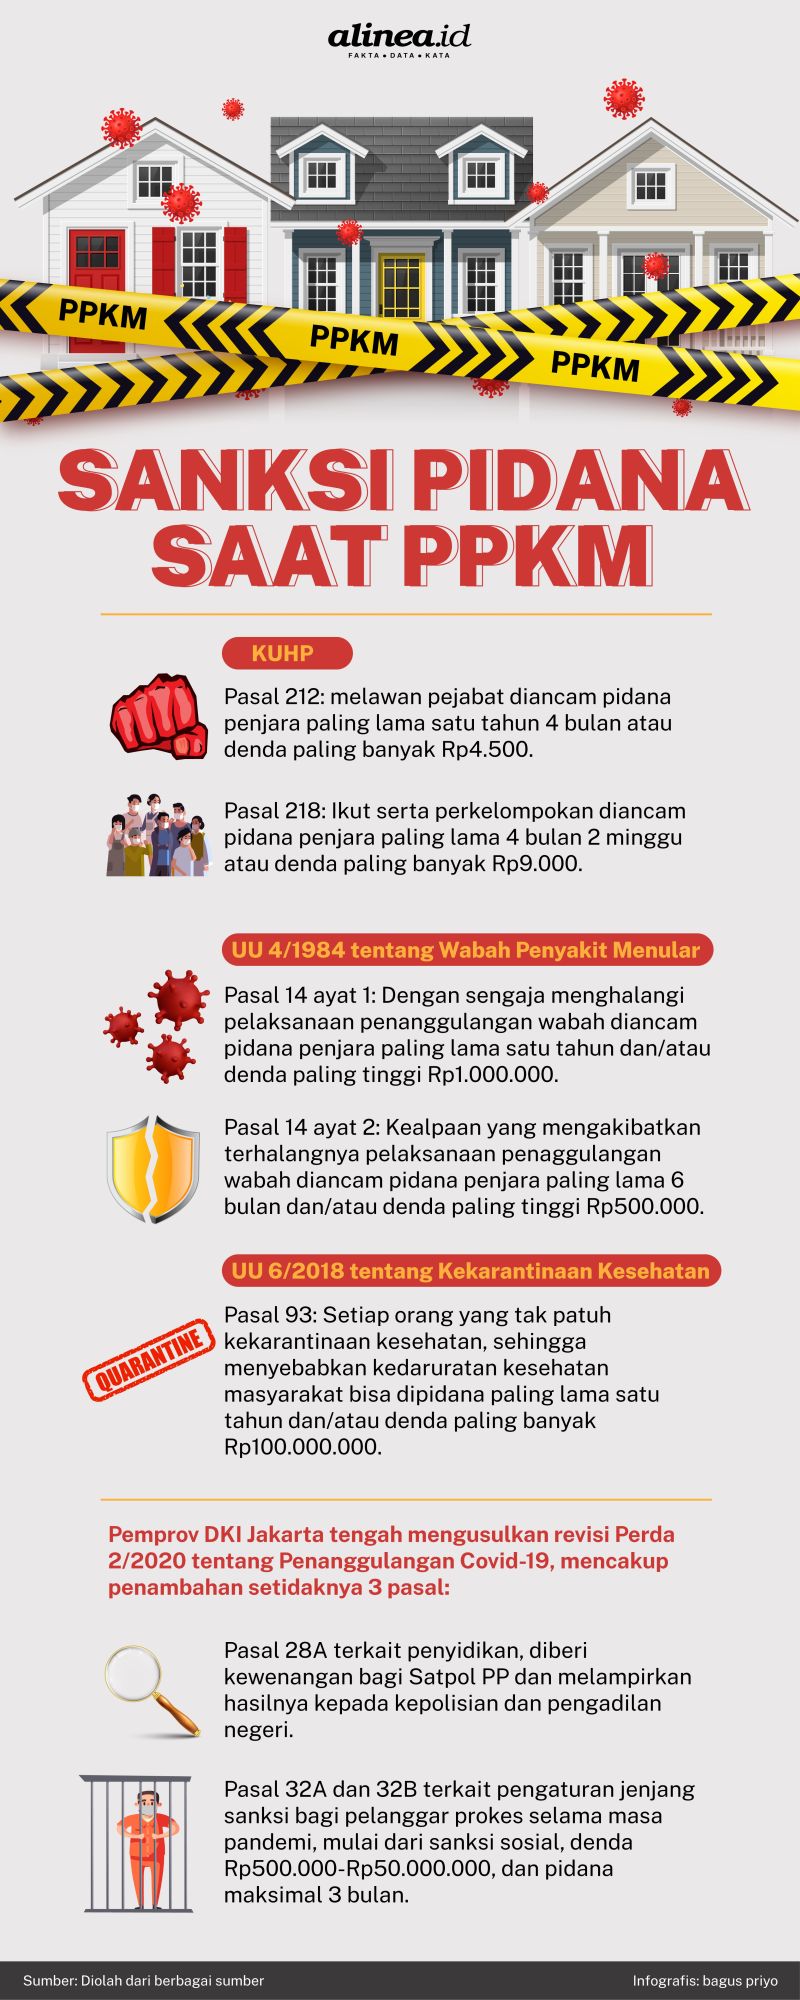 Infografik Alinea.id/Bagus Priyo.